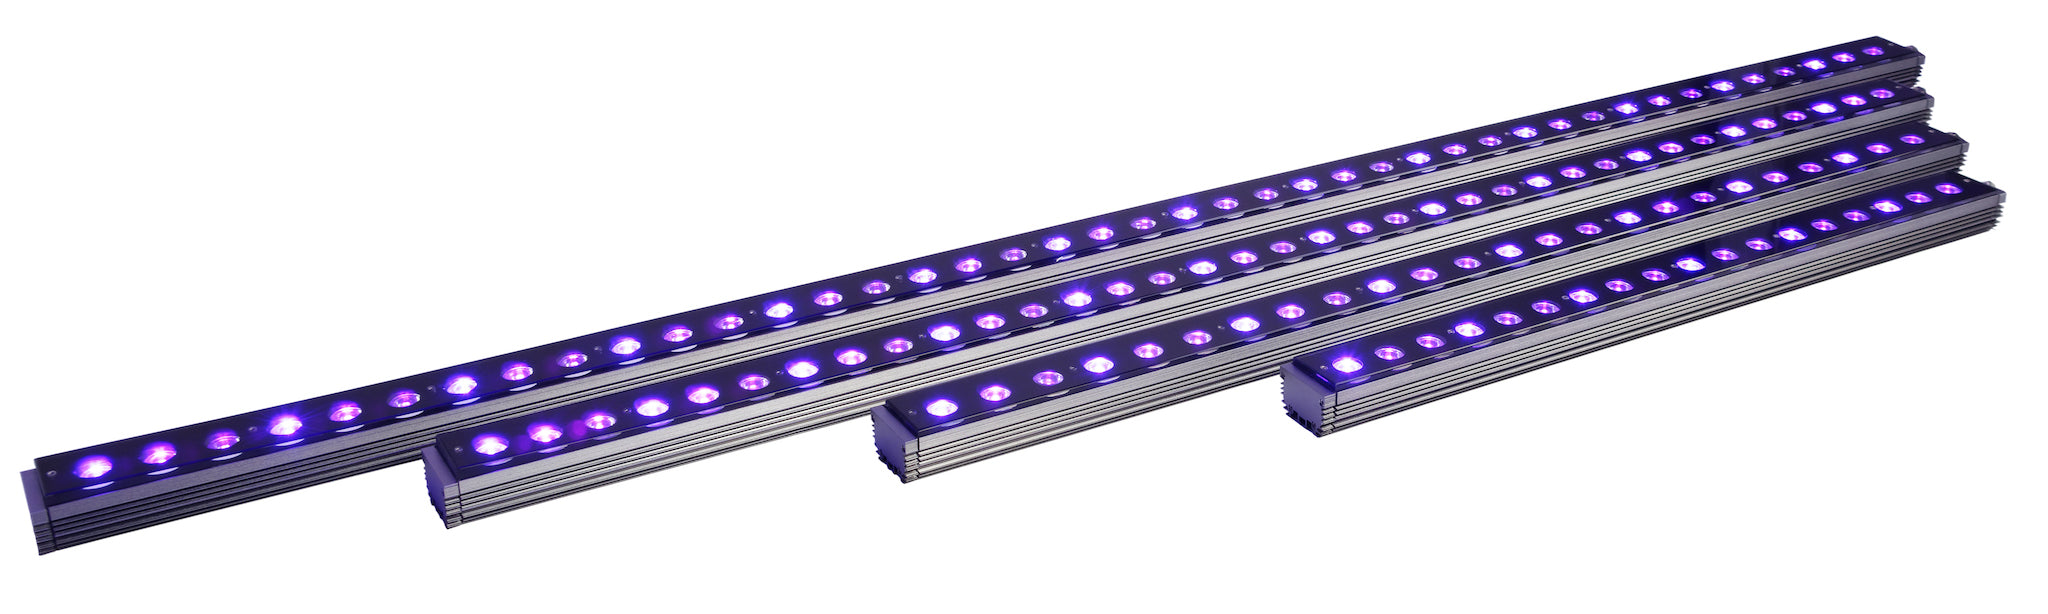 OR3 UV/Violet - Reef Aquarium LED-balk